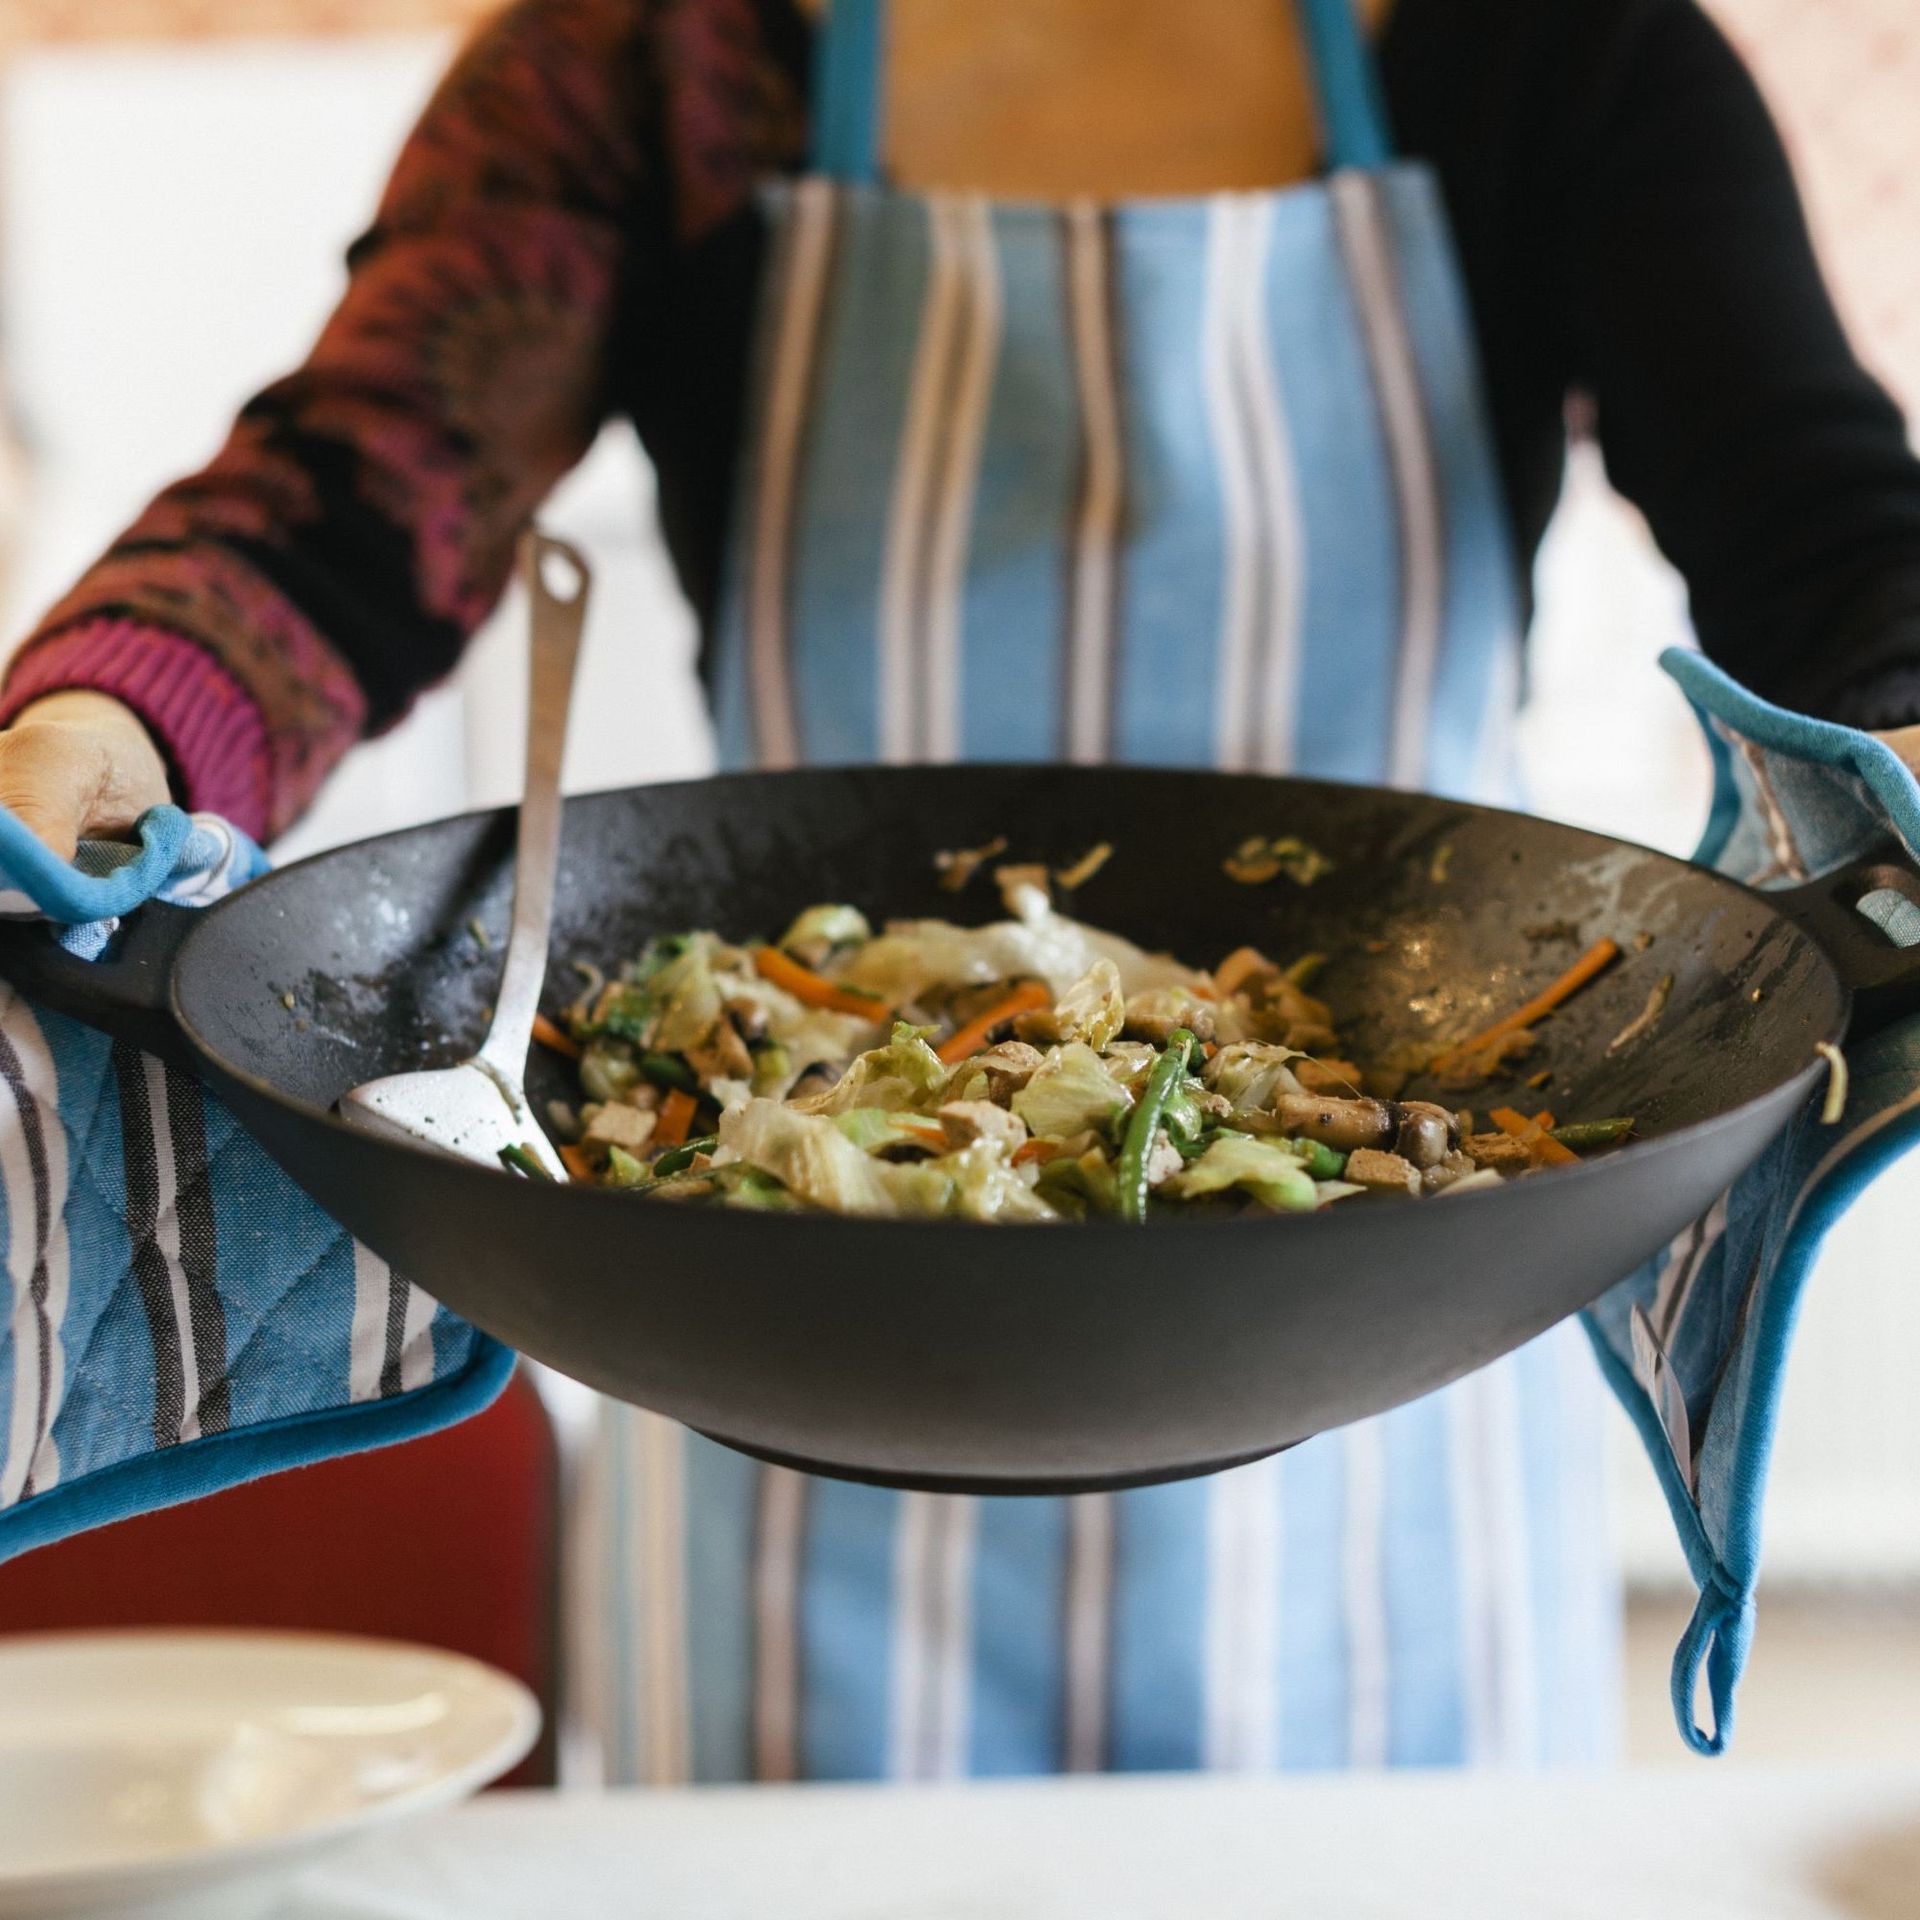 Quel type de wok choisir ? Pas celui avec revêtement antiadhésif